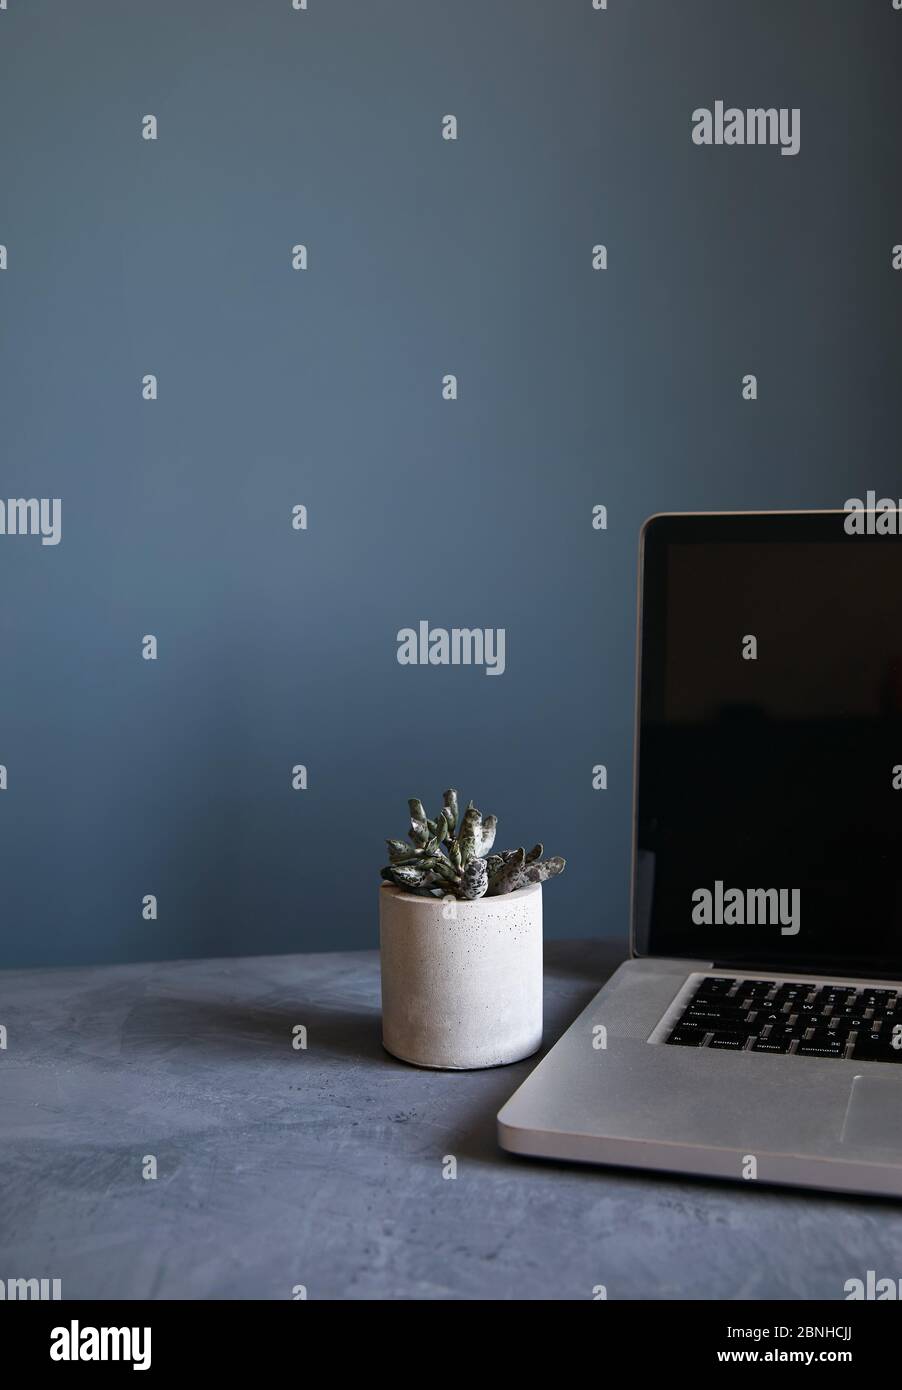 Espace de travail vide avec ordinateur portable et plante sur fond de mur gris pierre. Concept de travail à domicile. Banque D'Images